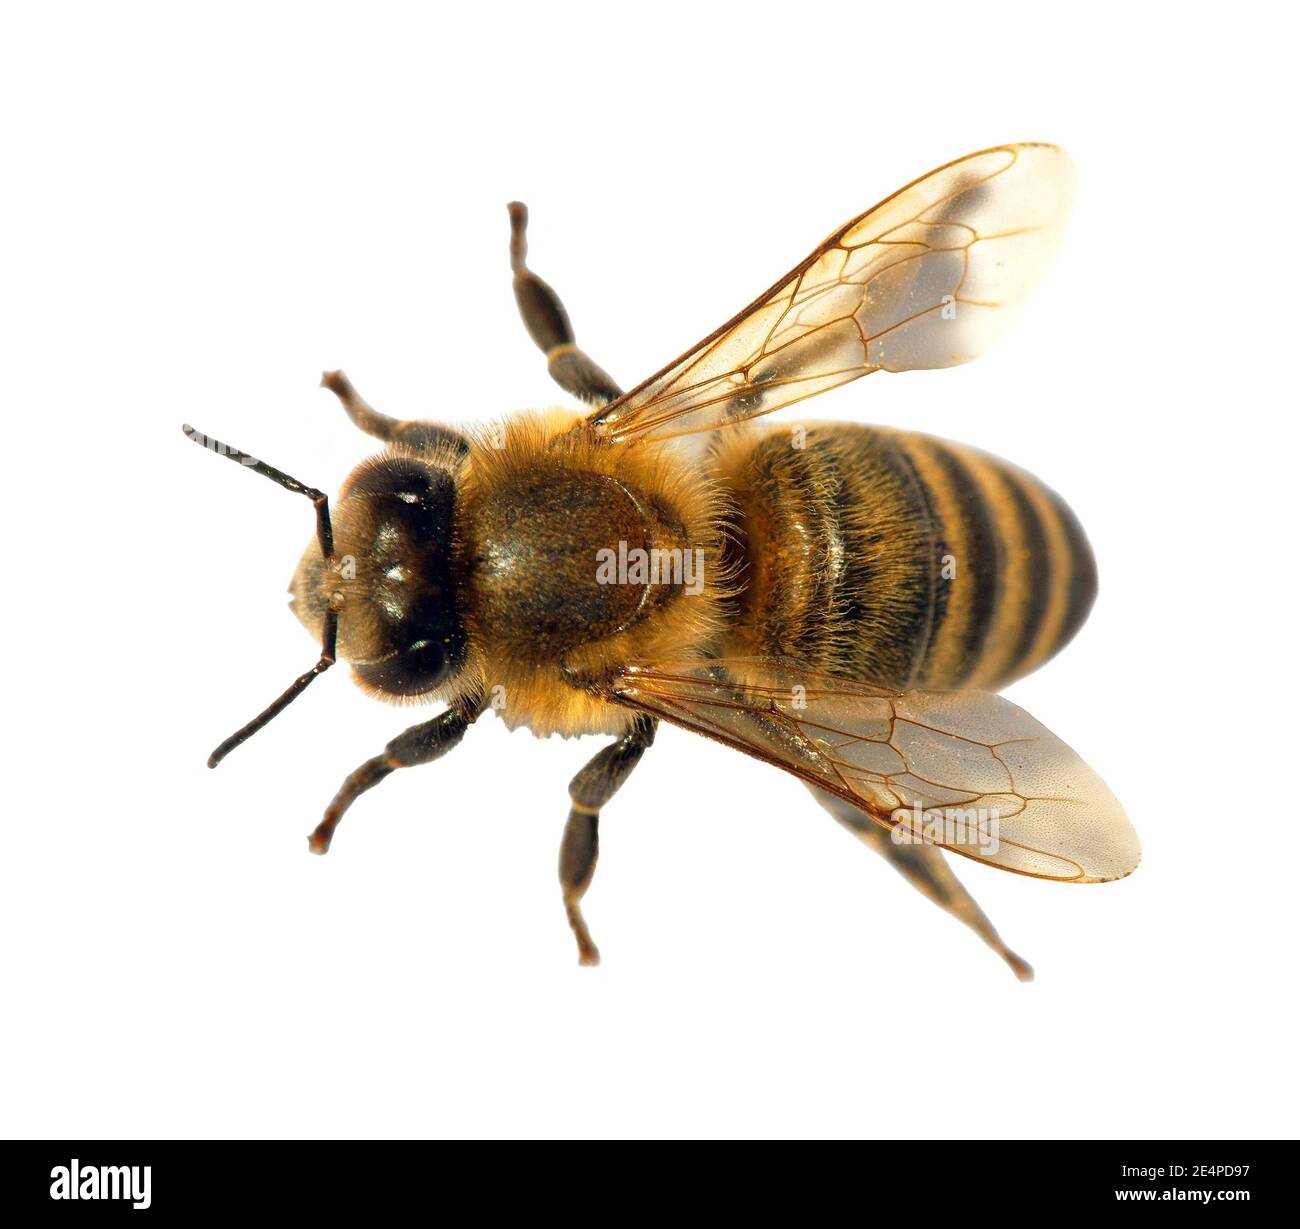 Détail de l'abeille ou de l'abeille en latin APIs mellifera, abeille européenne ou occidentale isolée sur fond blanc, abeille dorée Banque D'Images